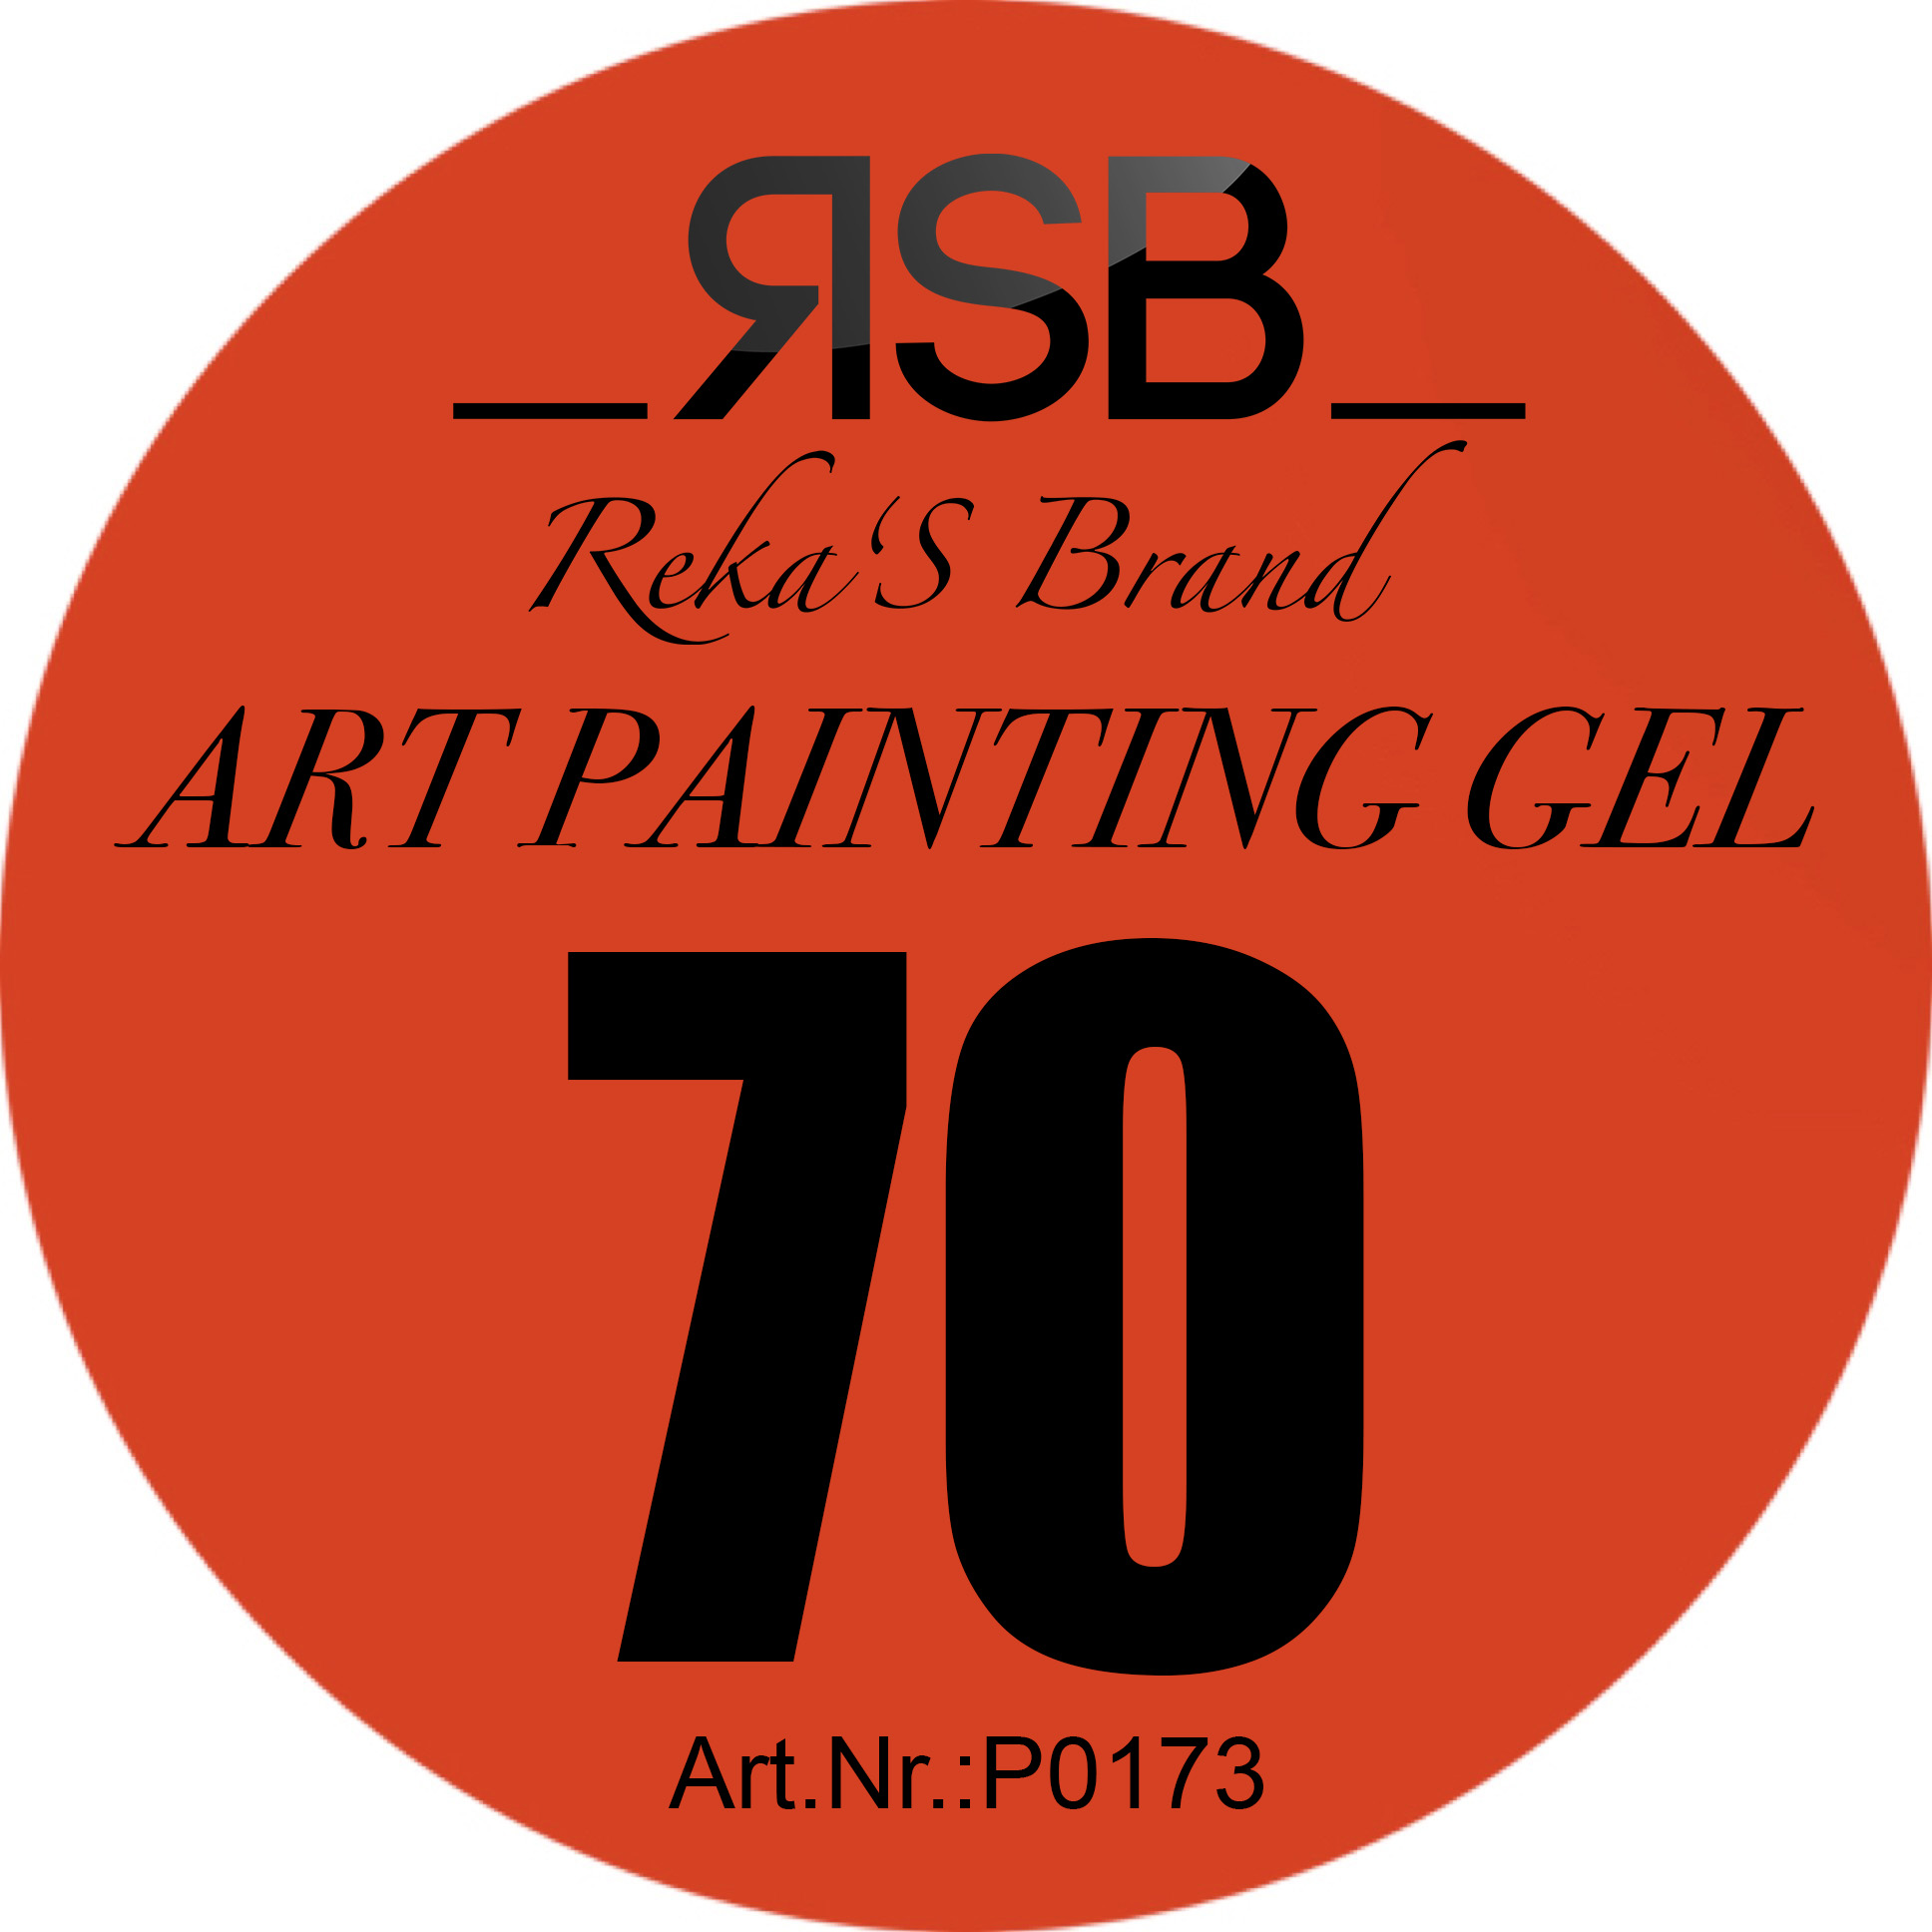 ART PAINTING GEL 70